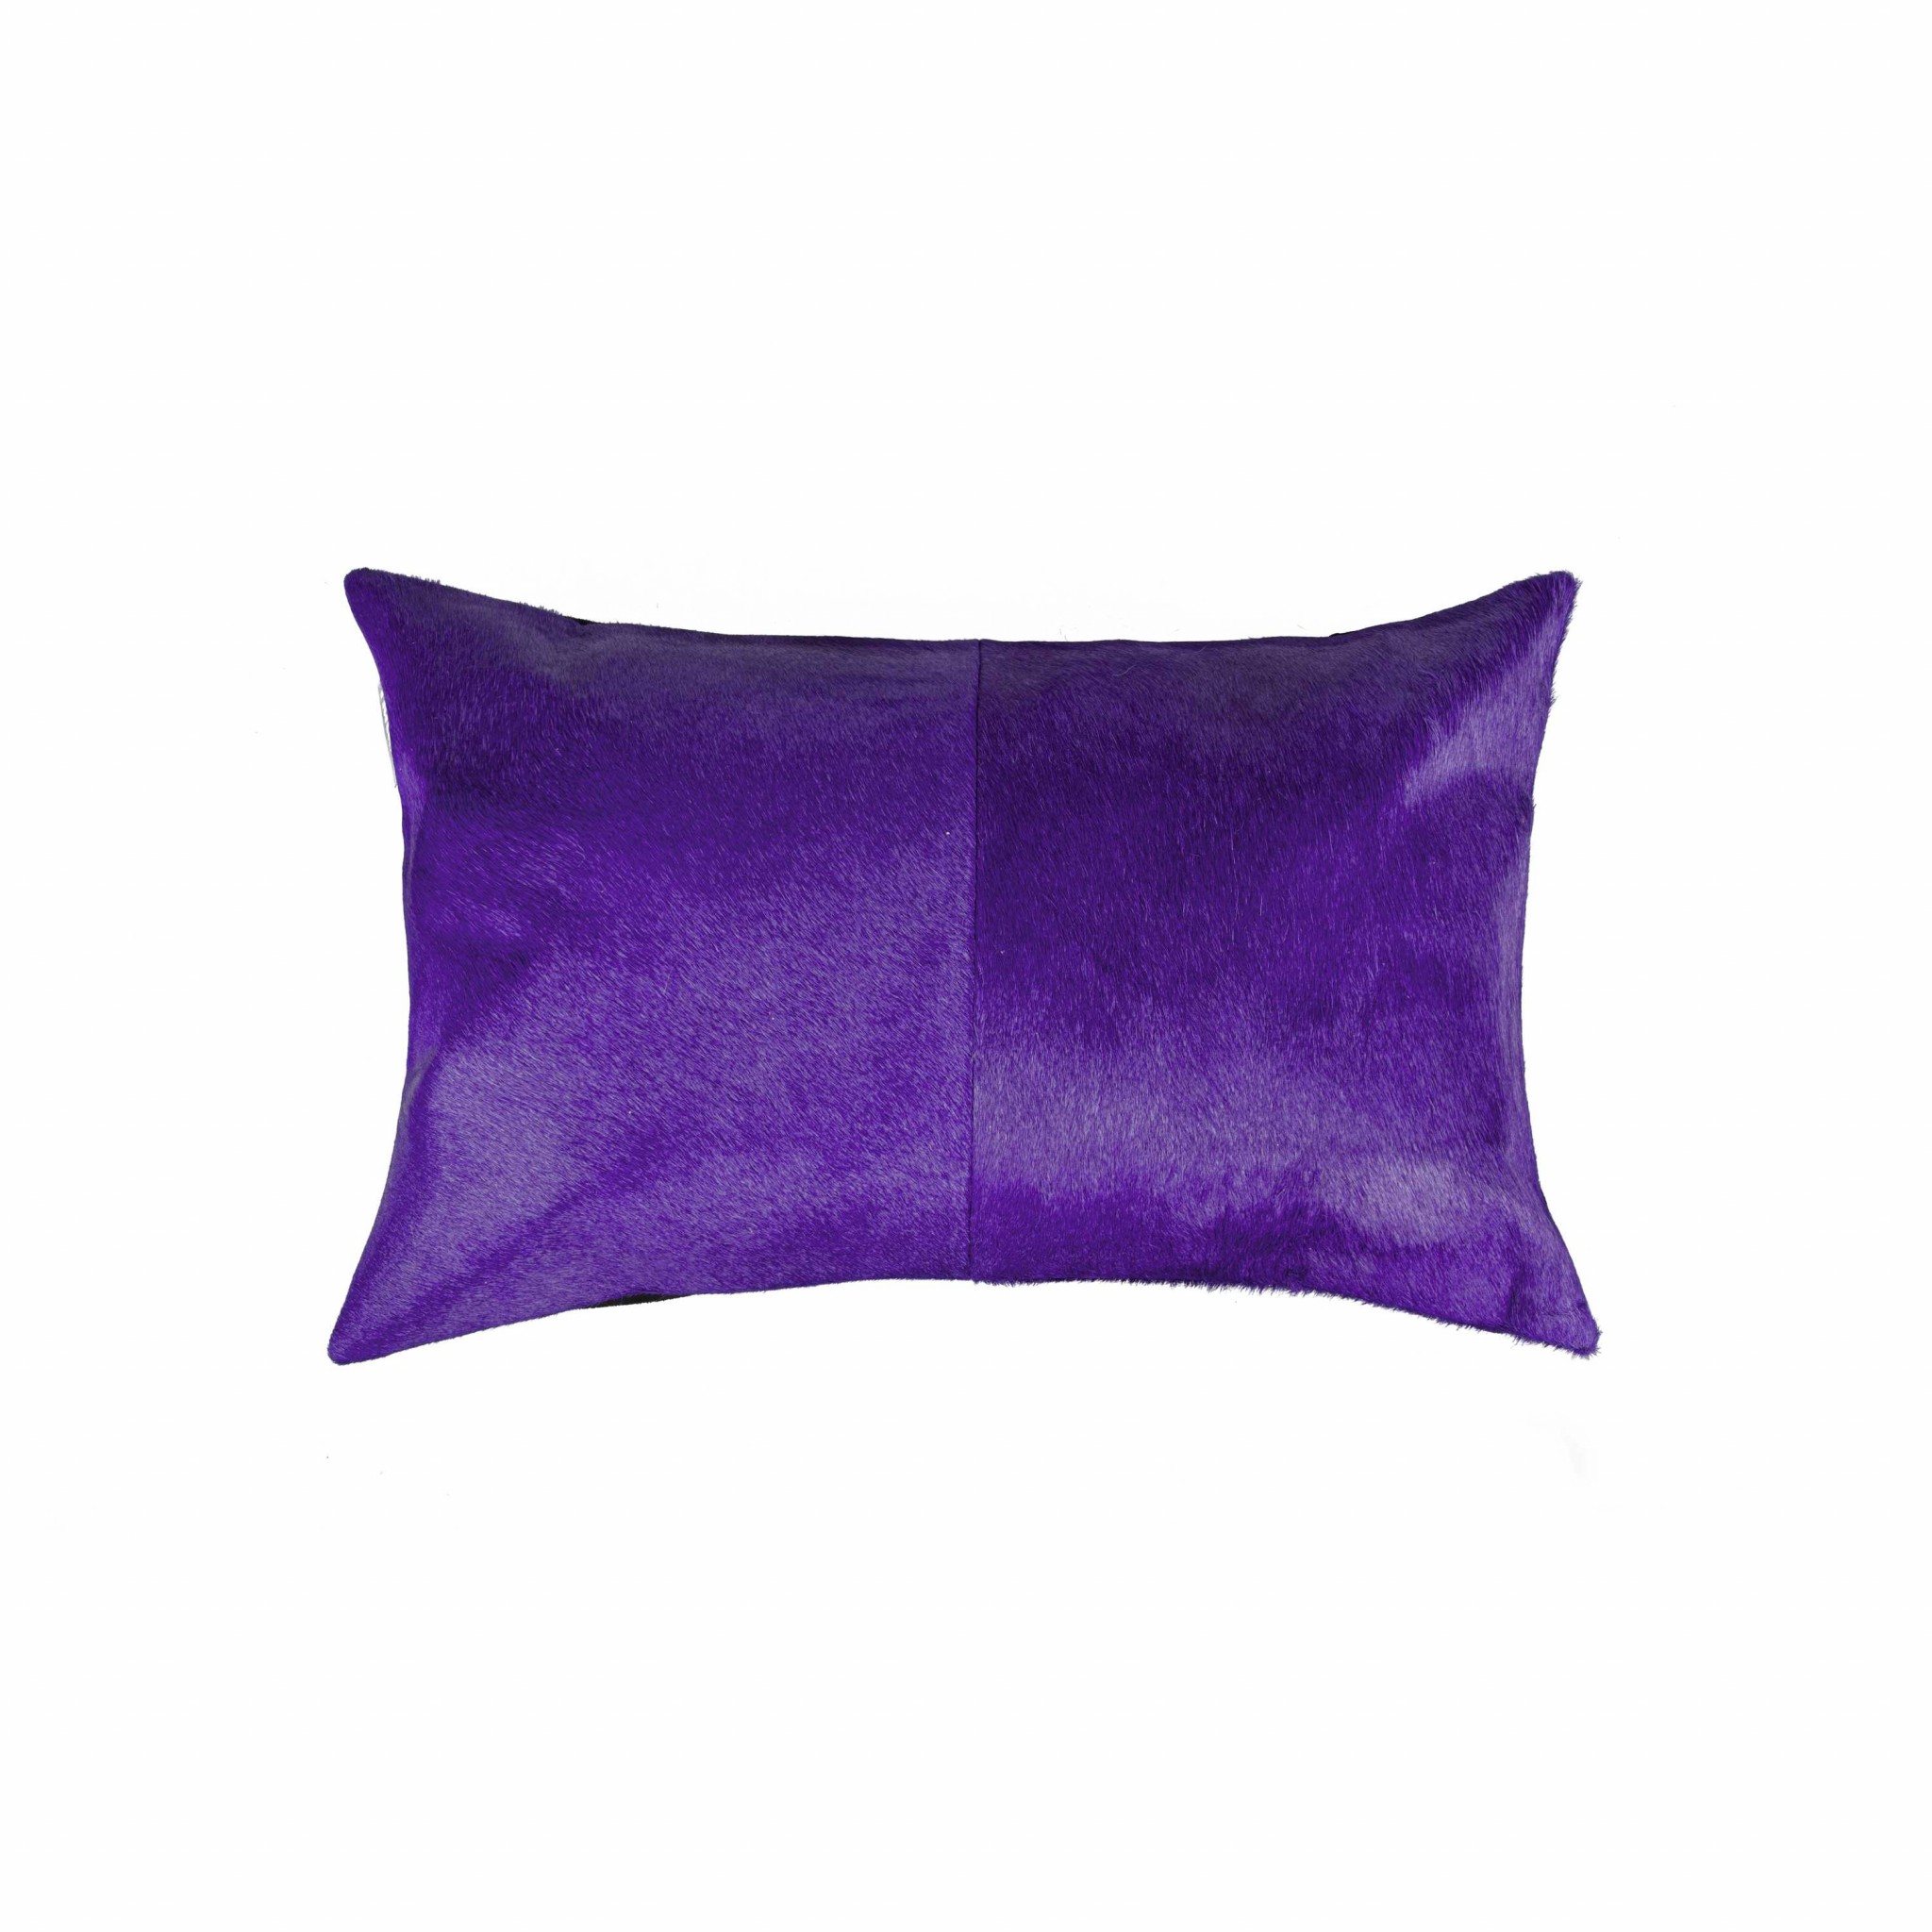 12" x 20" x 5" Purple Cowhide - Pillow